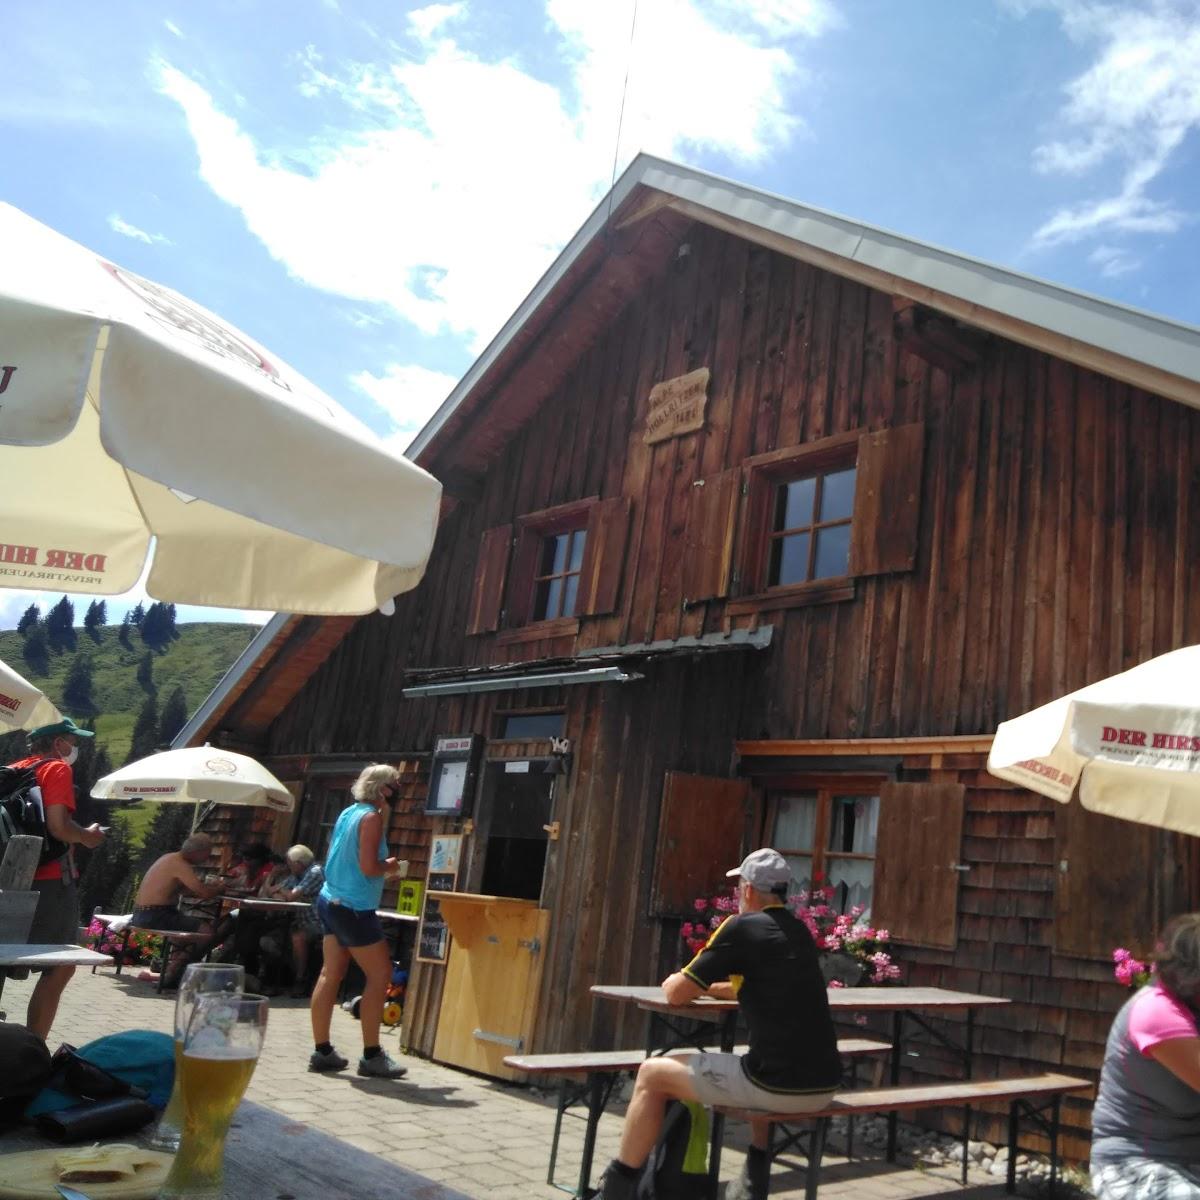 Restaurant "Höllritzer Alpe" in Blaichach